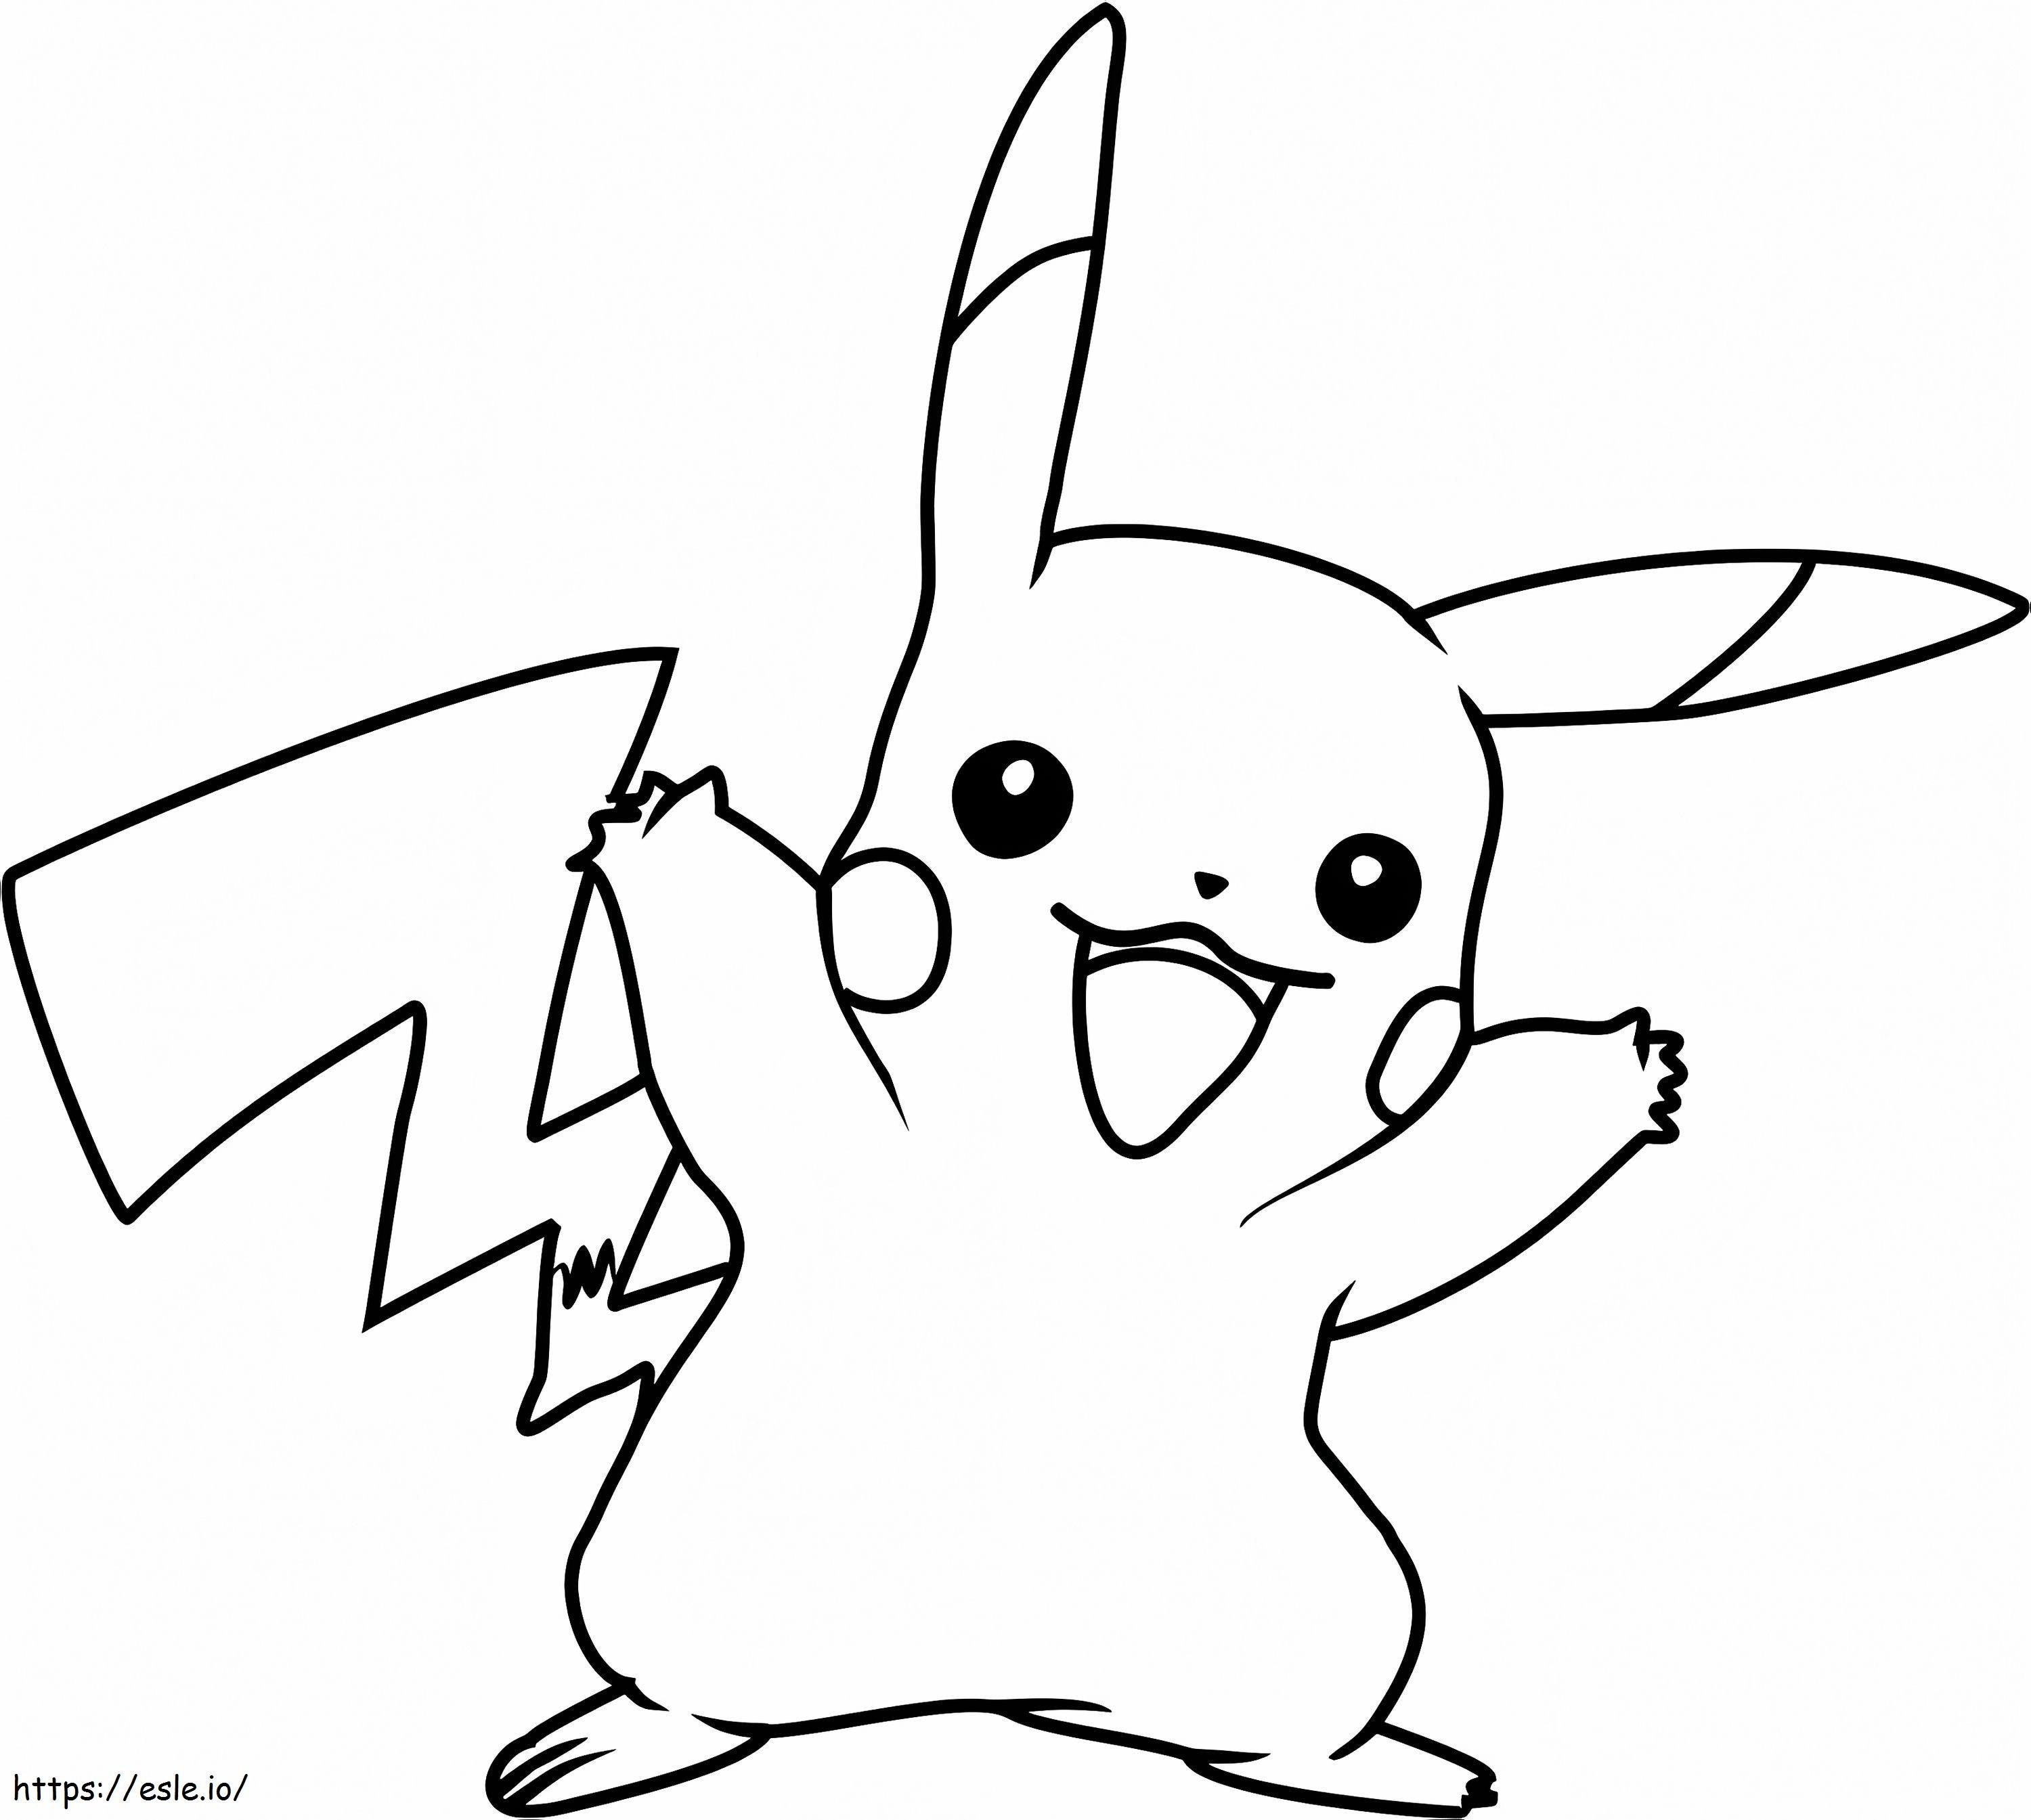 1530669716 Pikachu Pokemon A4 coloring page